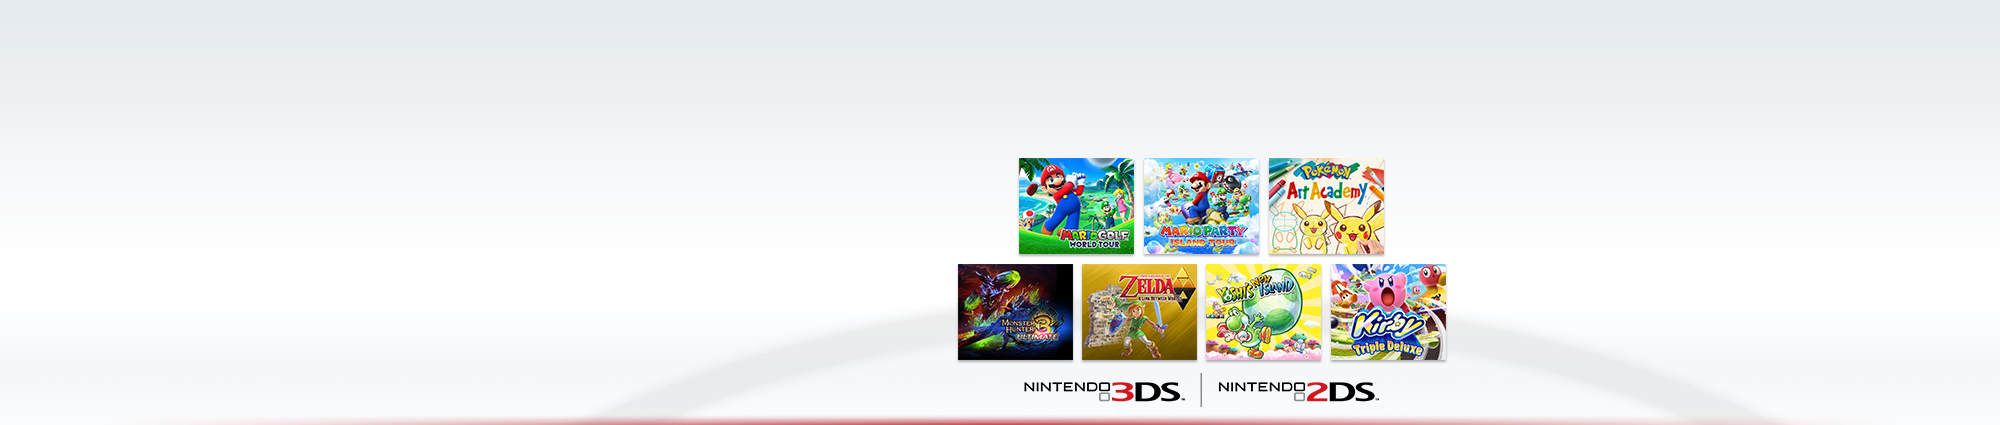 Promoção de inverno 2014 Nintendo 3DS – jogo extra